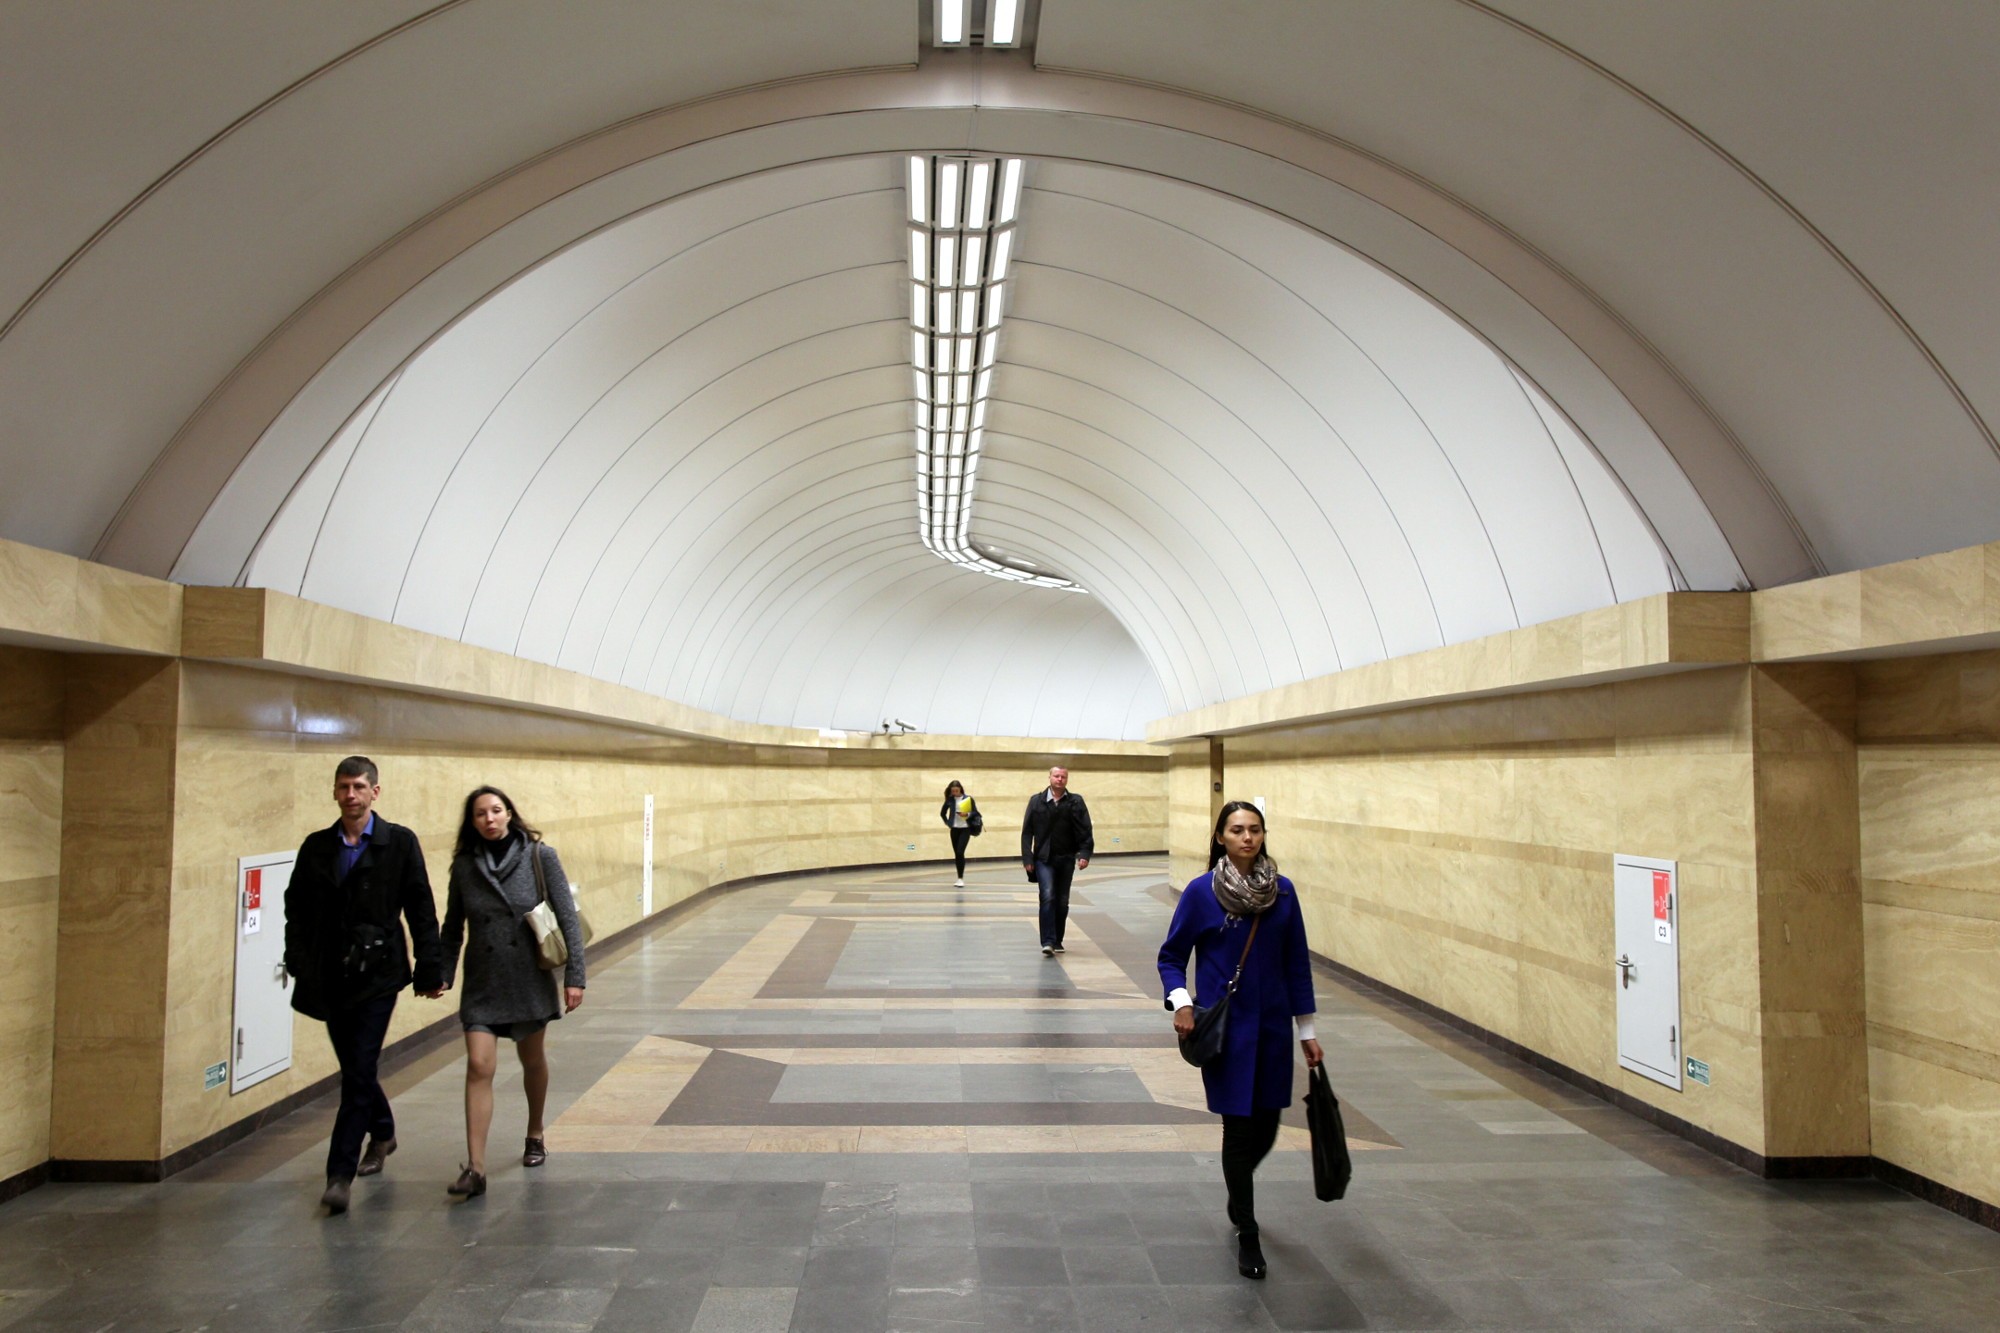 Станция метро Спасская